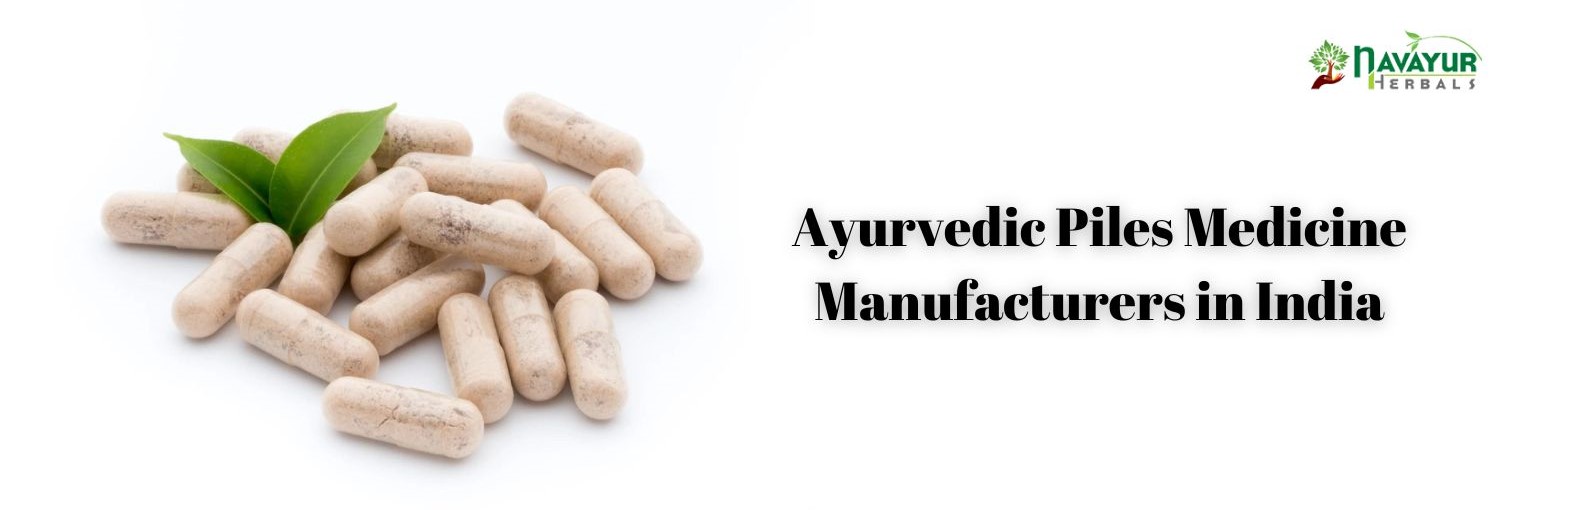 Ayurvedic Piles Medicine Manufacturers in India